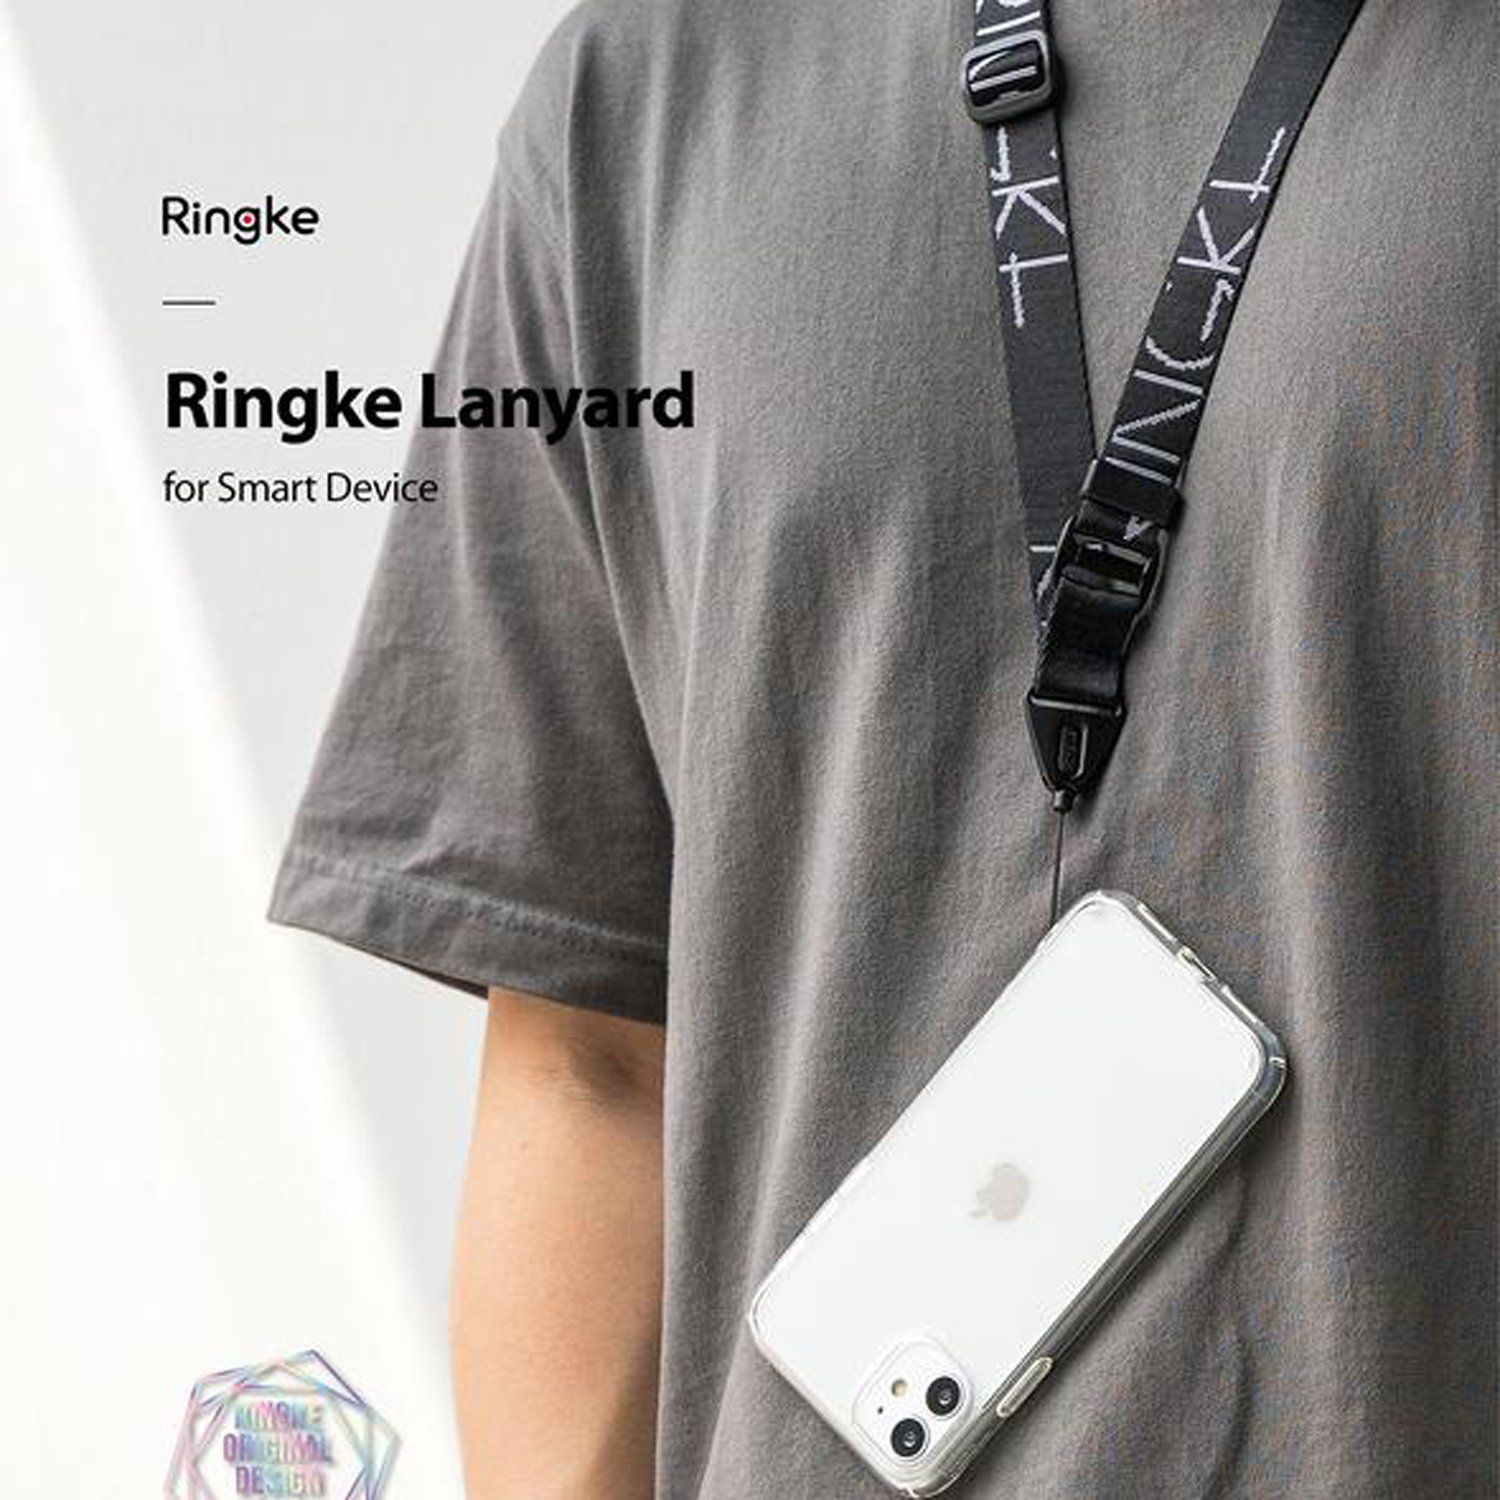 Ringke Lanyard Strap Lettering, Black Lanyard Design Strap Ringke 